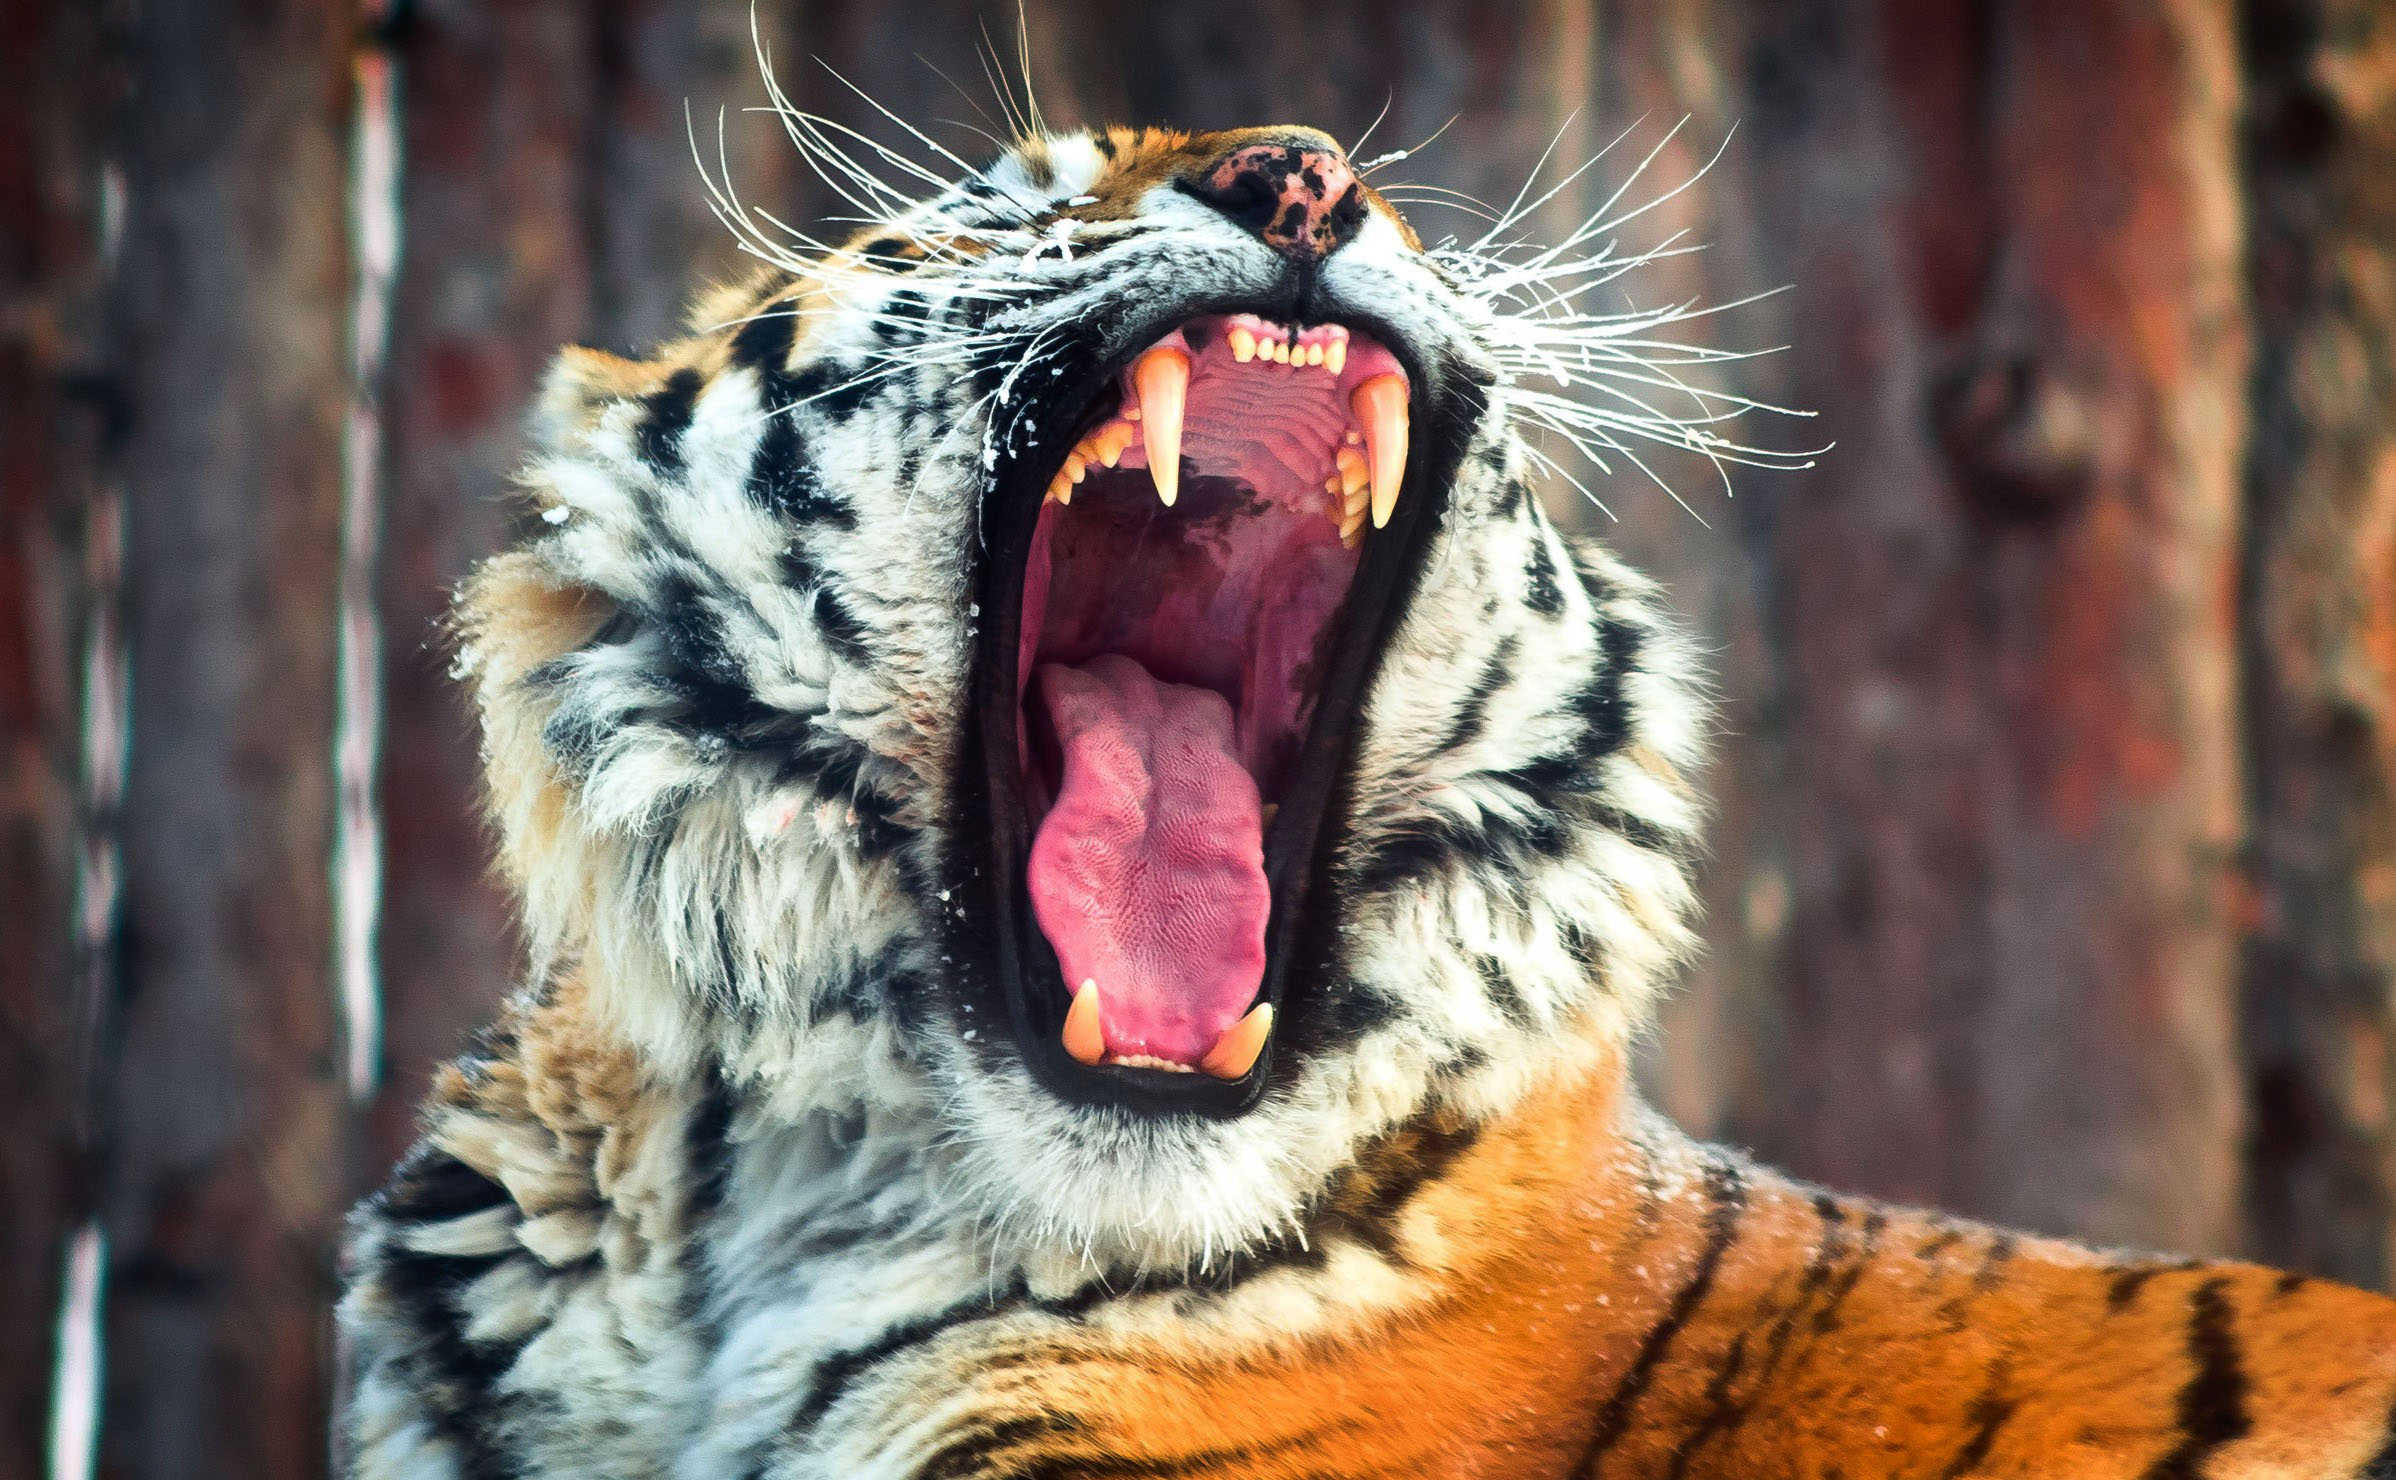 Descarga gratuita de fondo de pantalla para móvil de Gatos, Animales, Tigre.